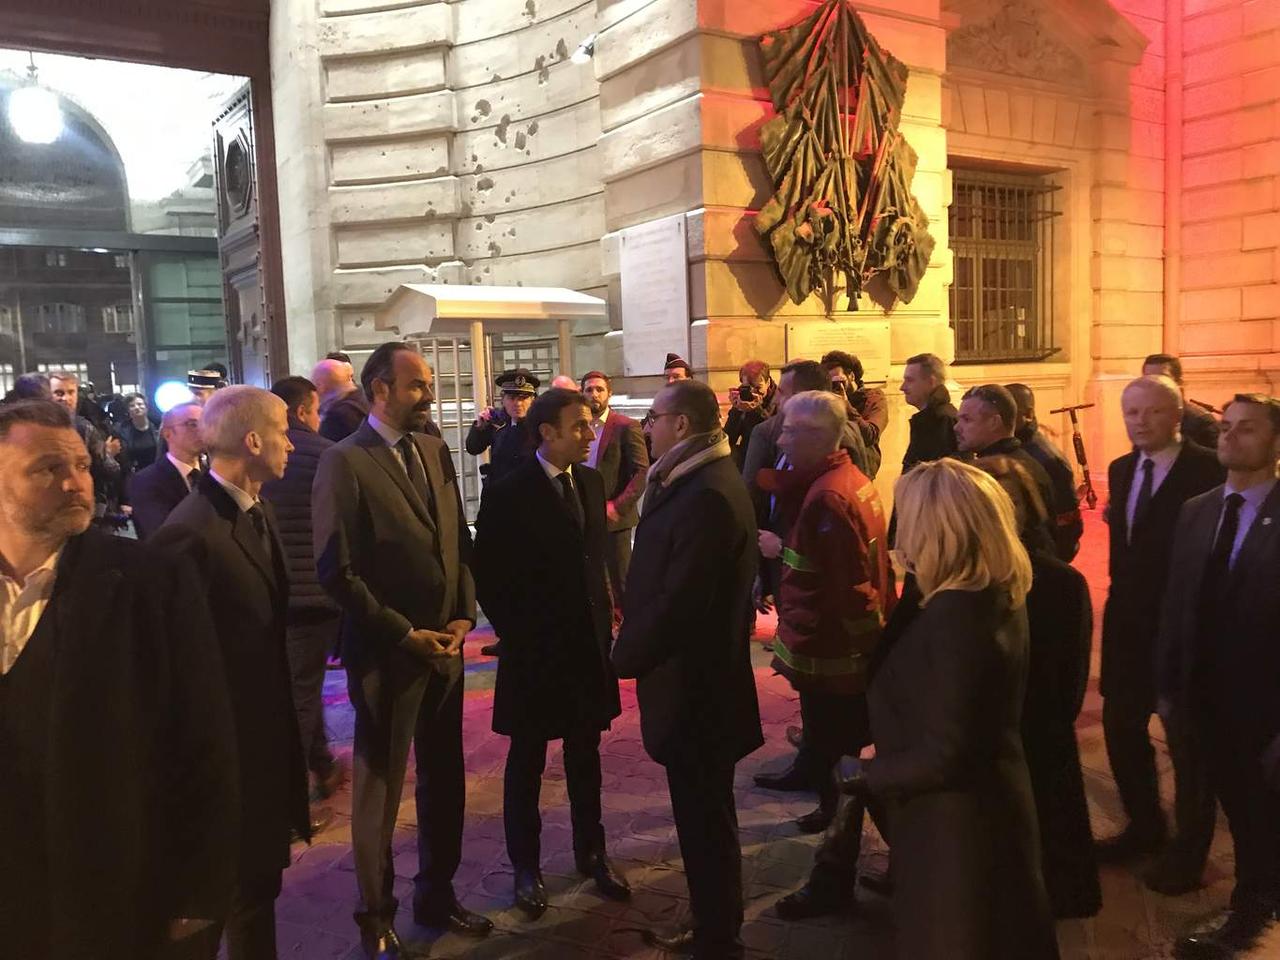 Emmanuel Macron arrive sur le parvis avec le premier ministre et des membres de son gouvernement. Il est encore maquillé pour l'intervention télévisée qu'il devait faire ce soir-là sur la crise des gilets jaunes. Arthur Berdah, Le Figaro.  